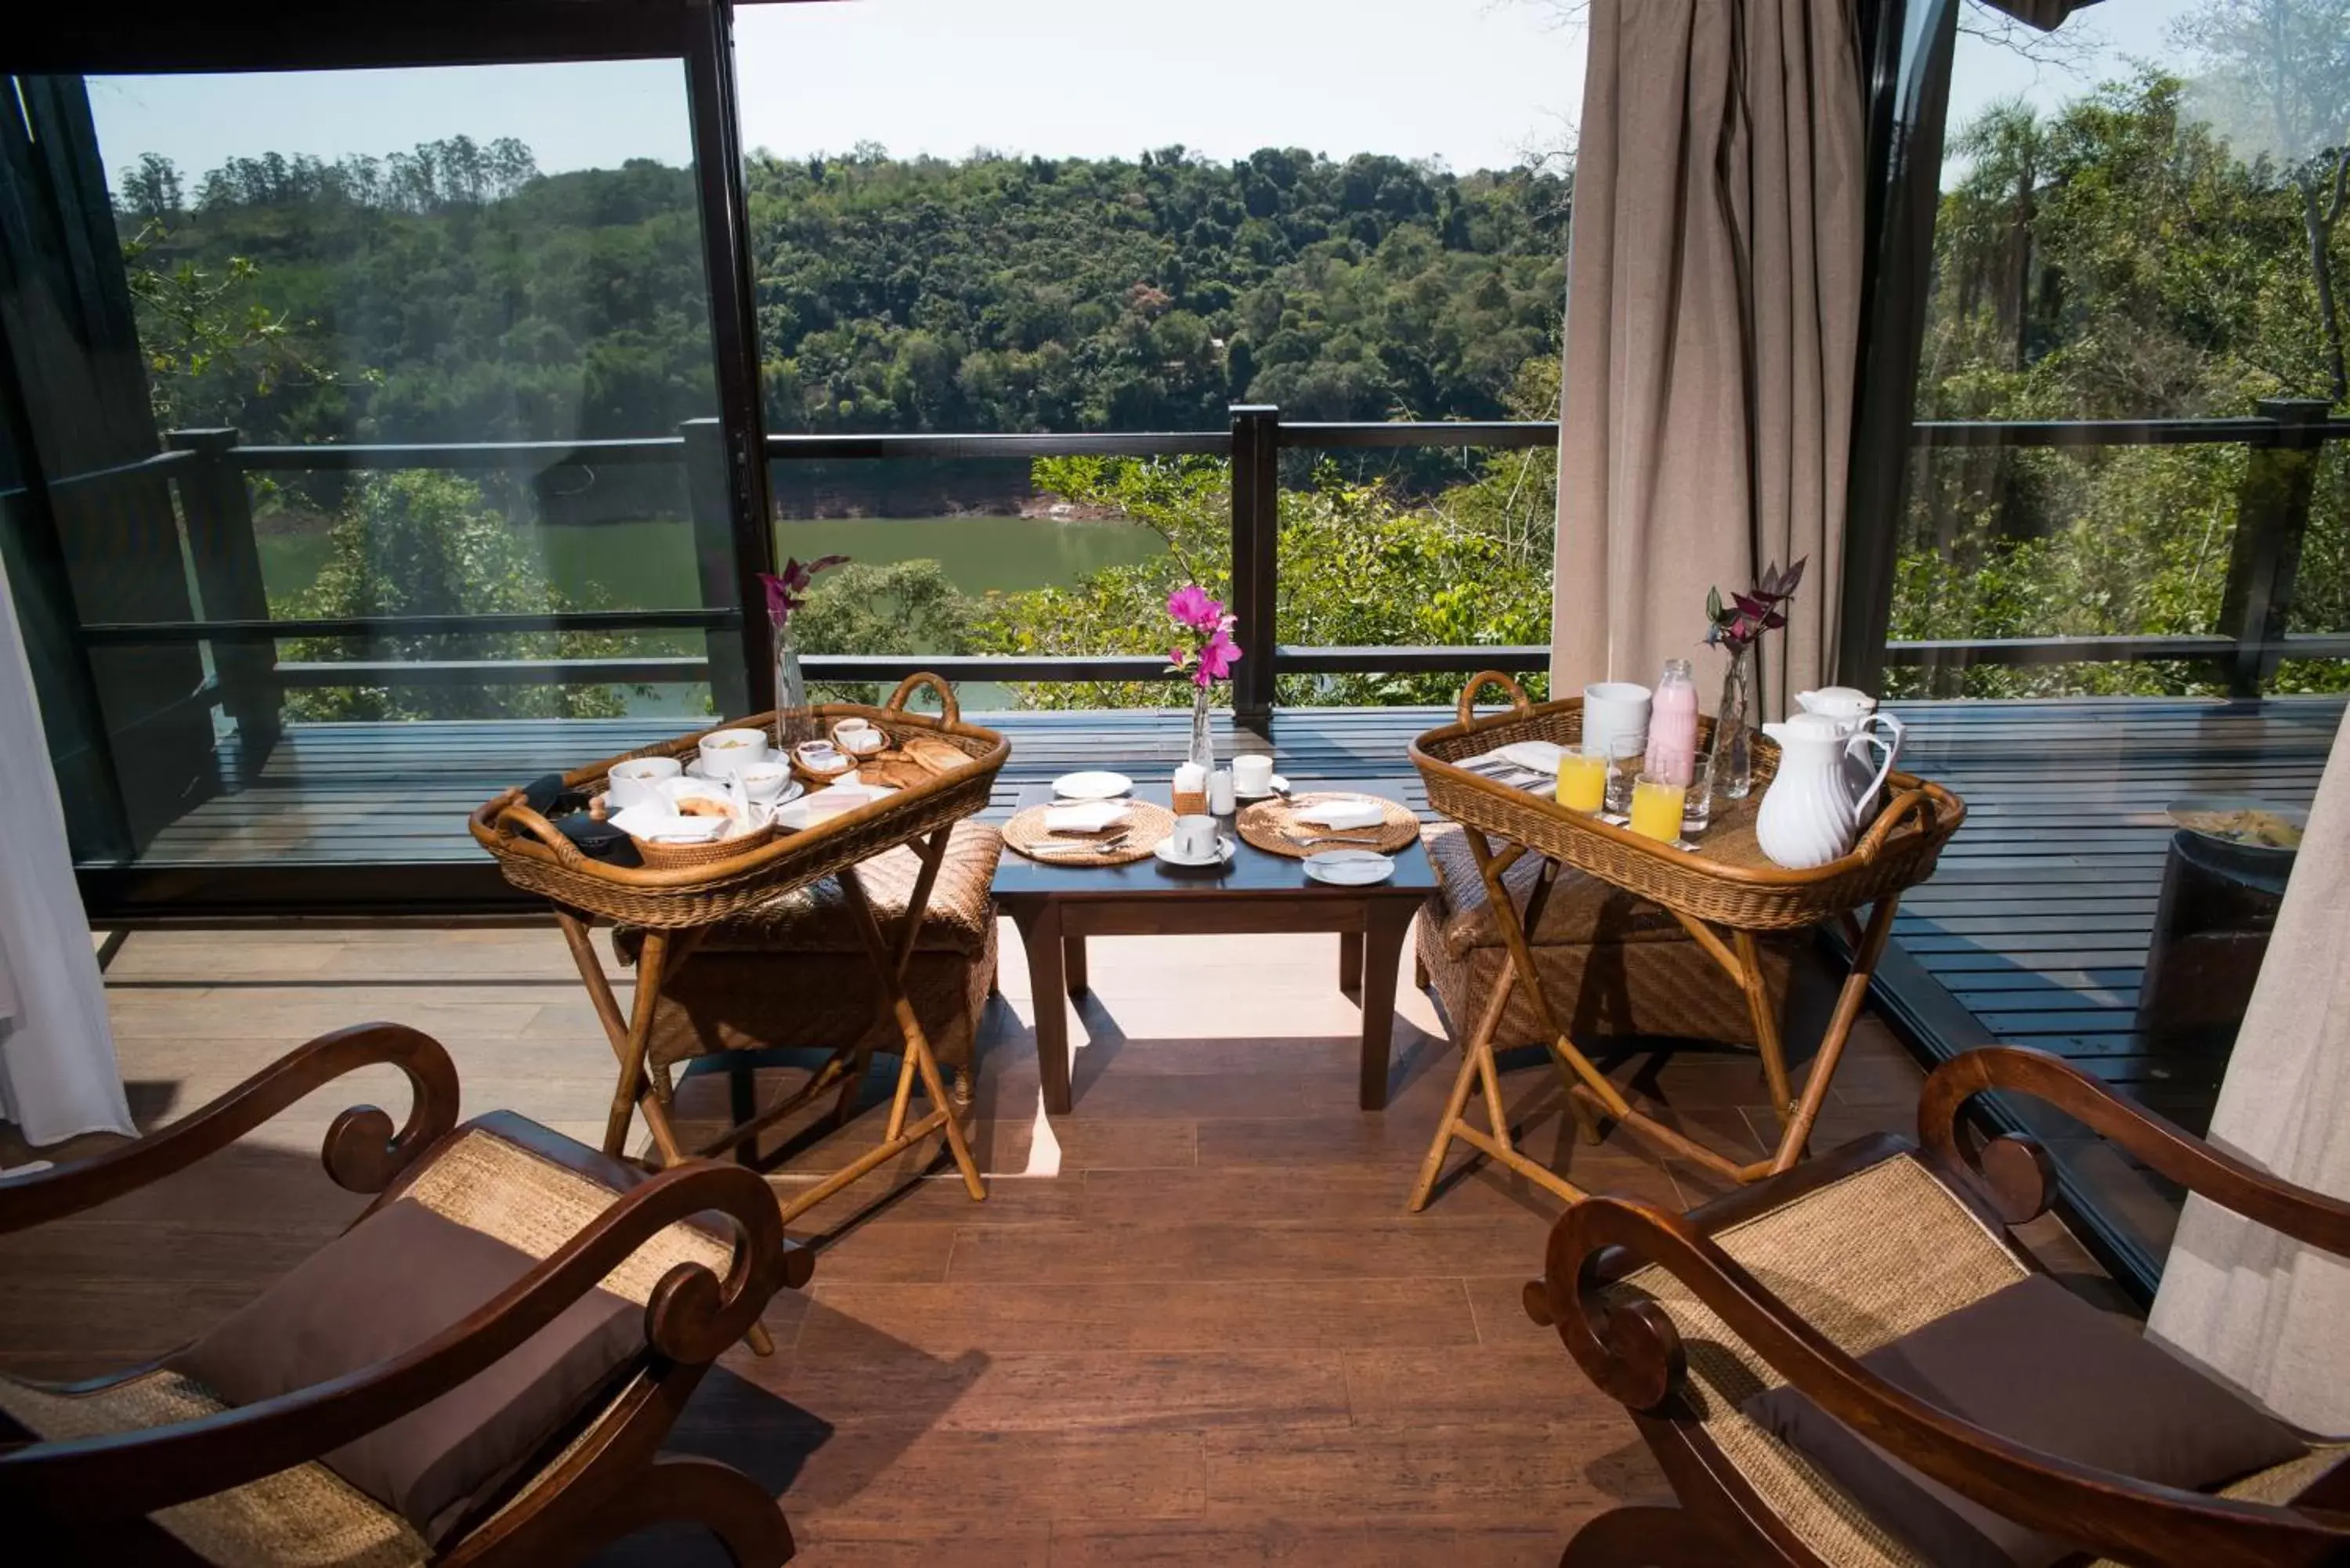 River view in Loi Suites Iguazu Hotel